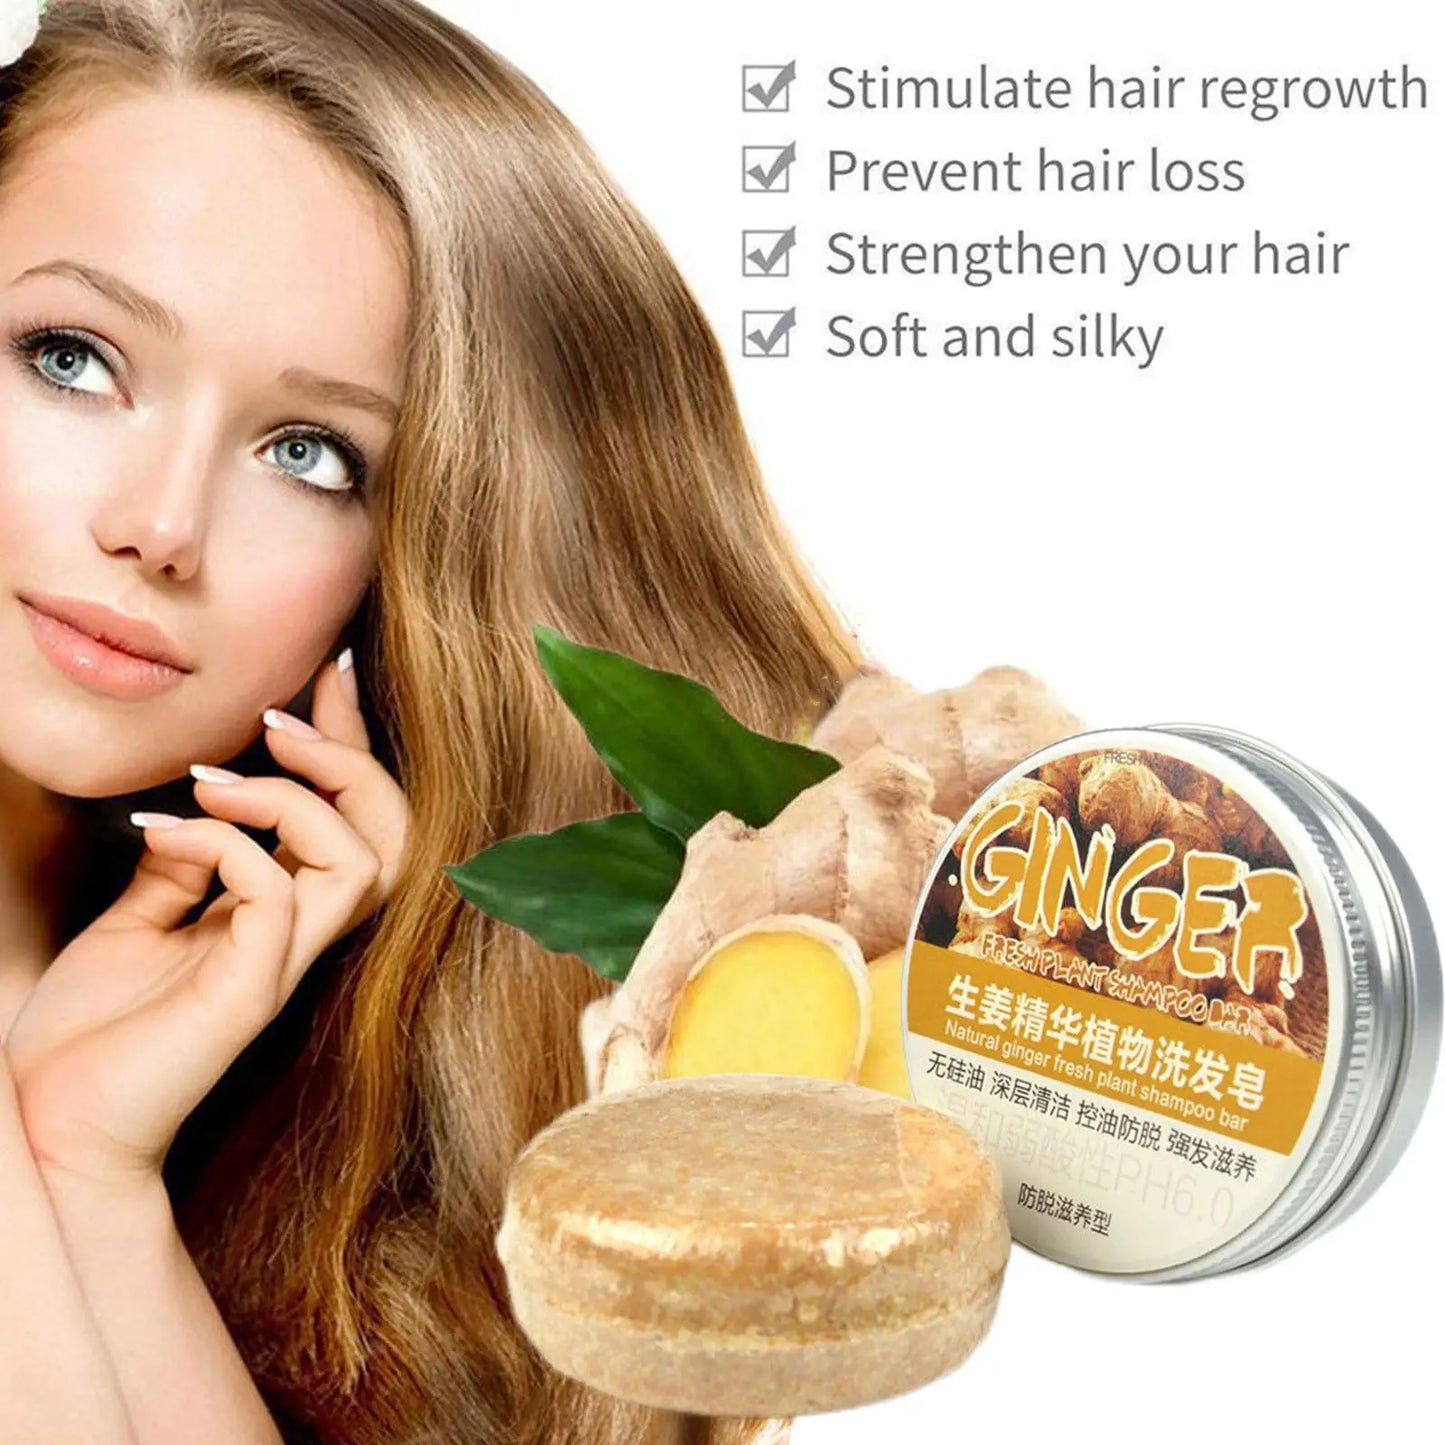 Ingwer-Polygonum-Seife, Shampoo-Seife, kaltverarbeitete Seife, Haar-Shampoo-Riegel, rein pflanzliche Haar-Shampoos, Haarpflege